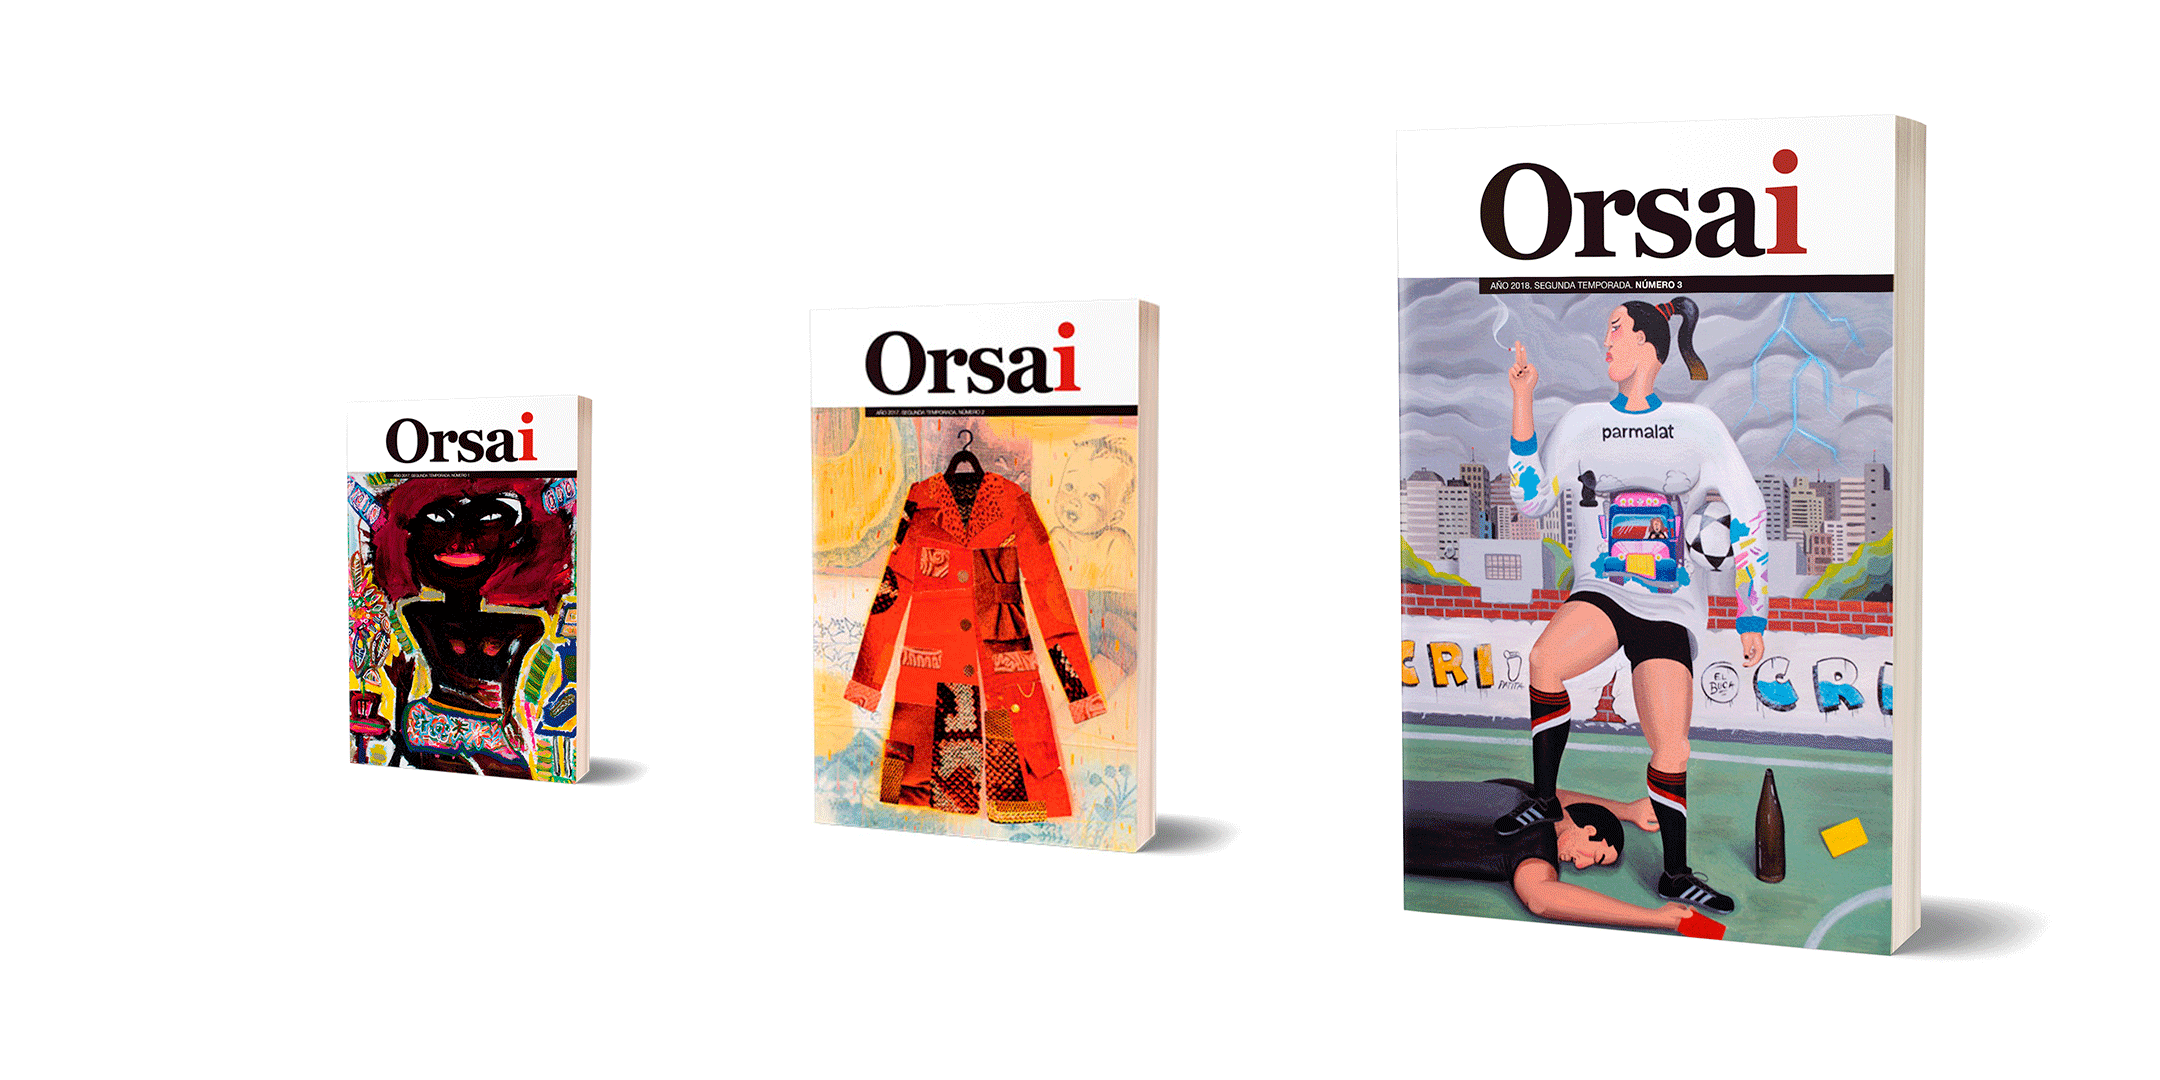 Portadas de la revista Orsai, publicación que exploró con éxito nuevas formas de financiamiento.